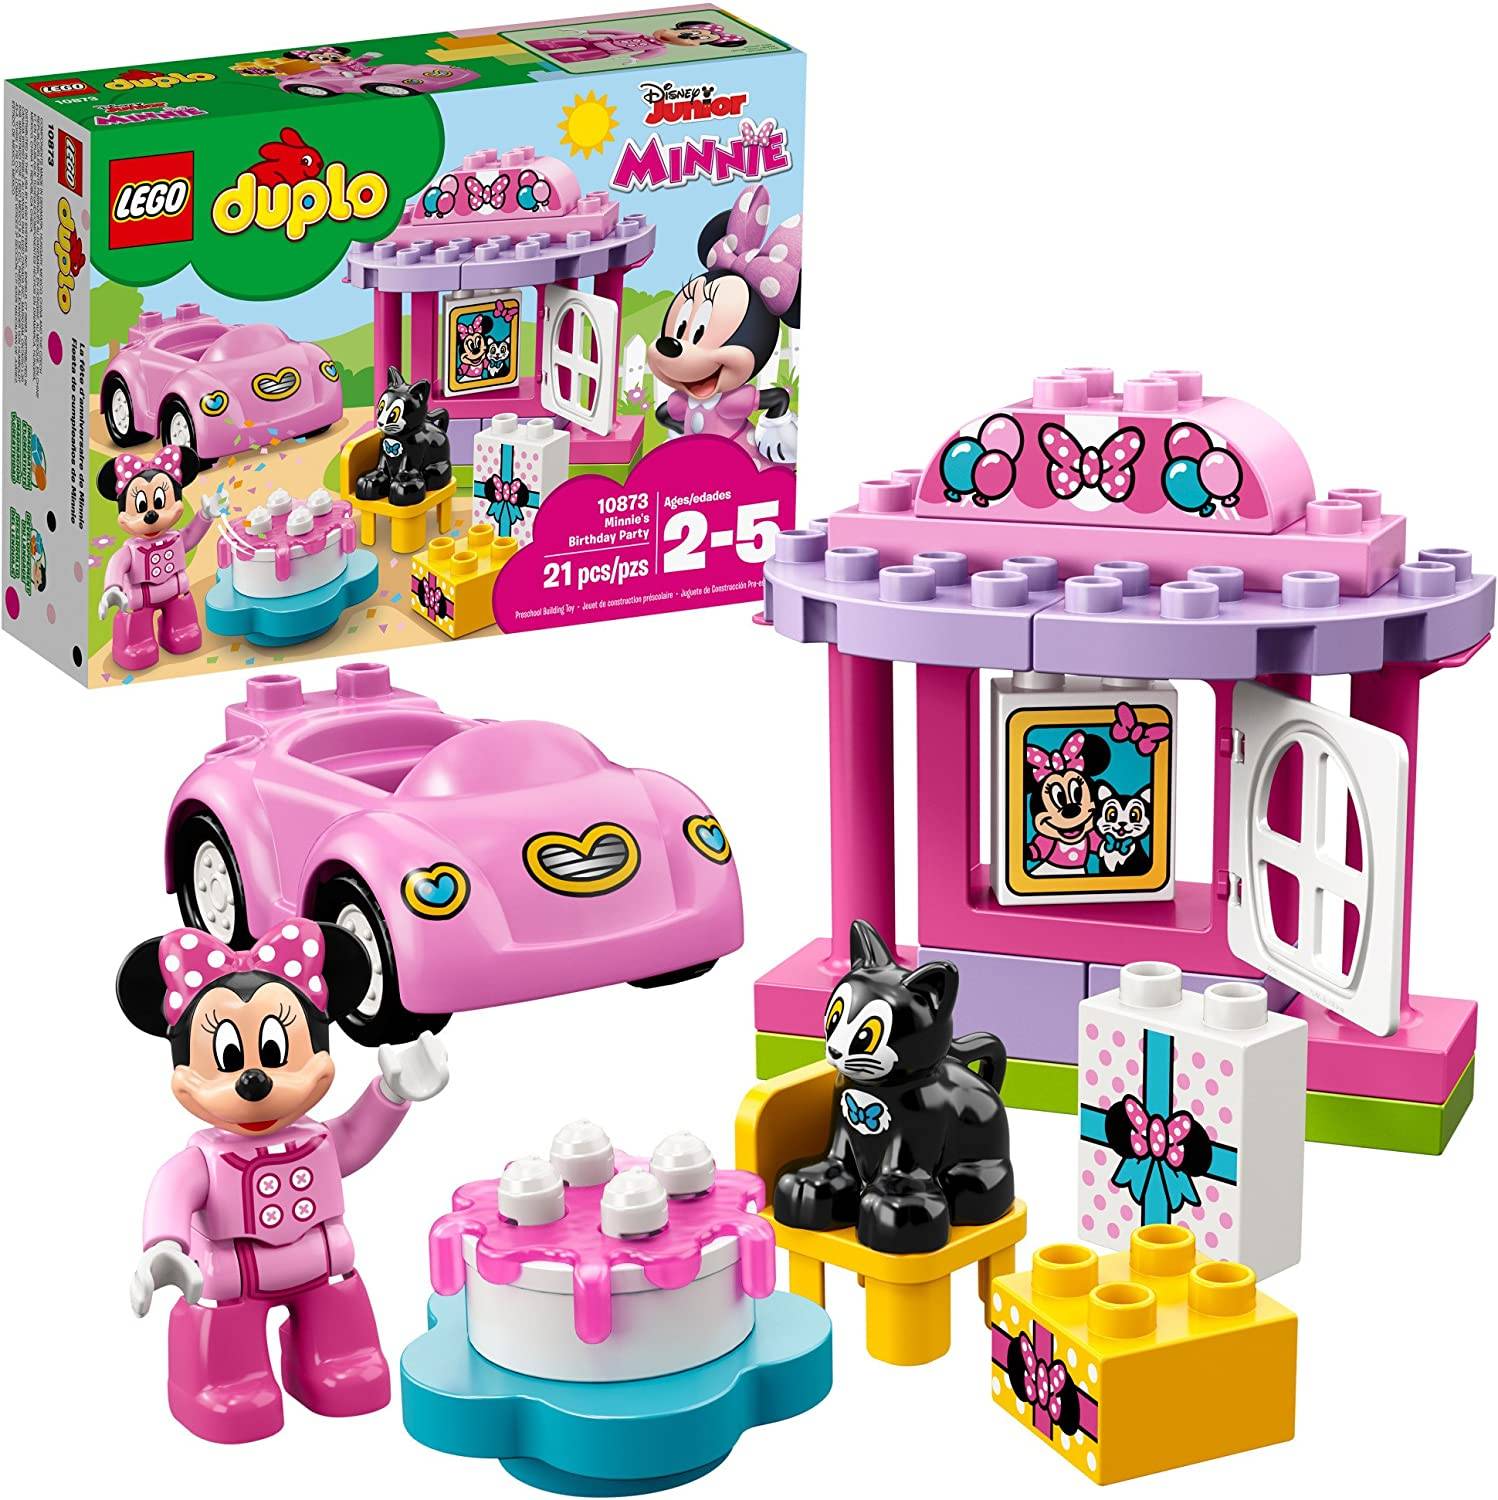 LEGO DUPLO Minnie's birthday party